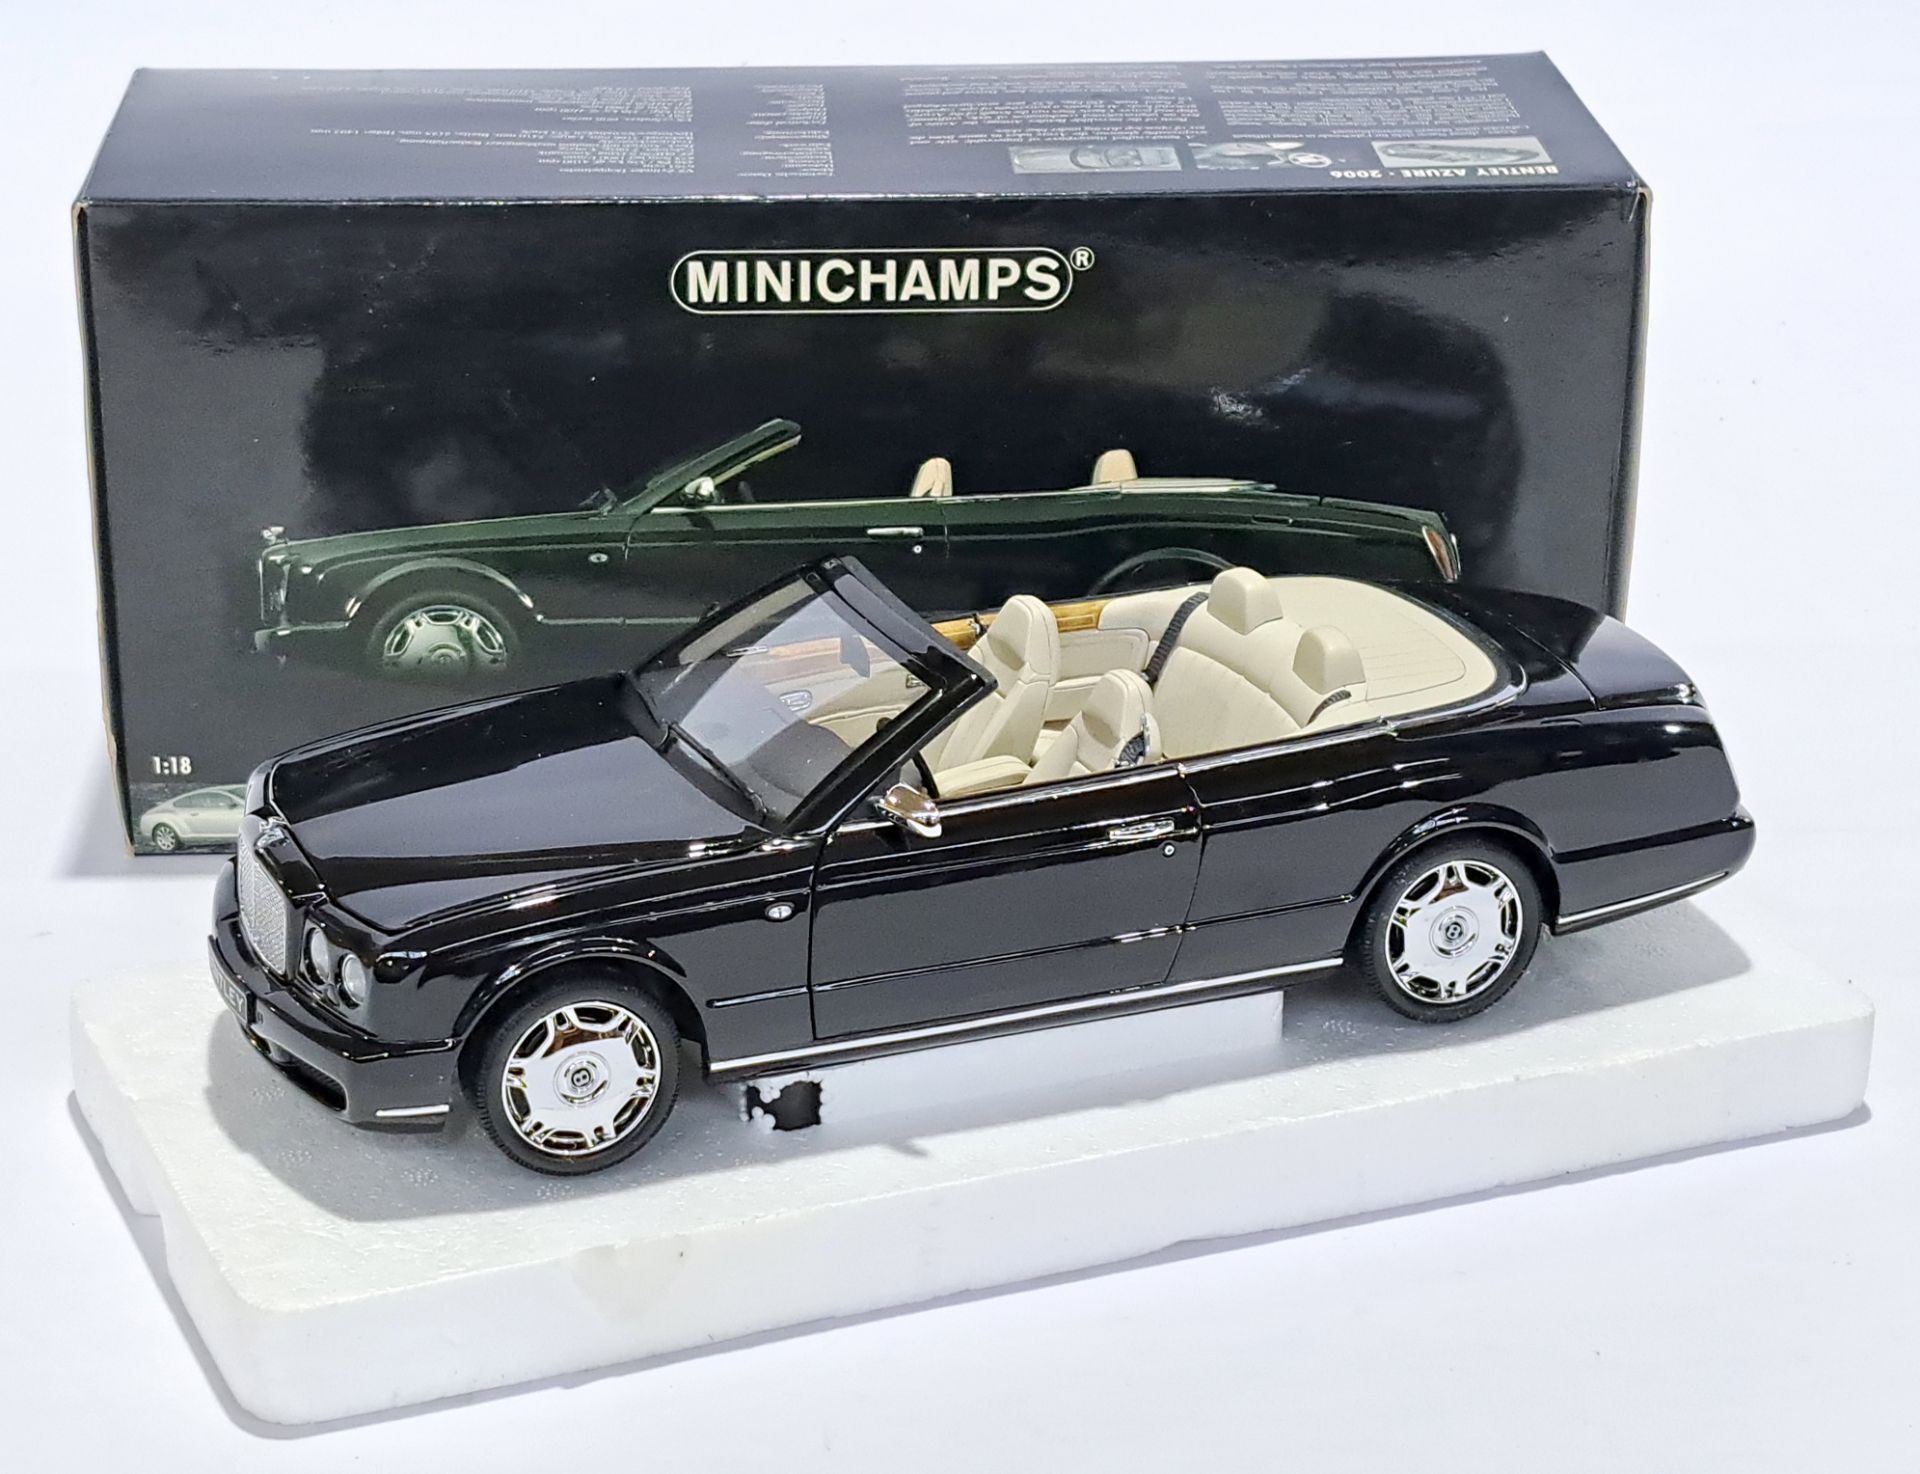 Minichamps (Paul's Model Art) 1:18 scale 139500 Bentley Azure 2006